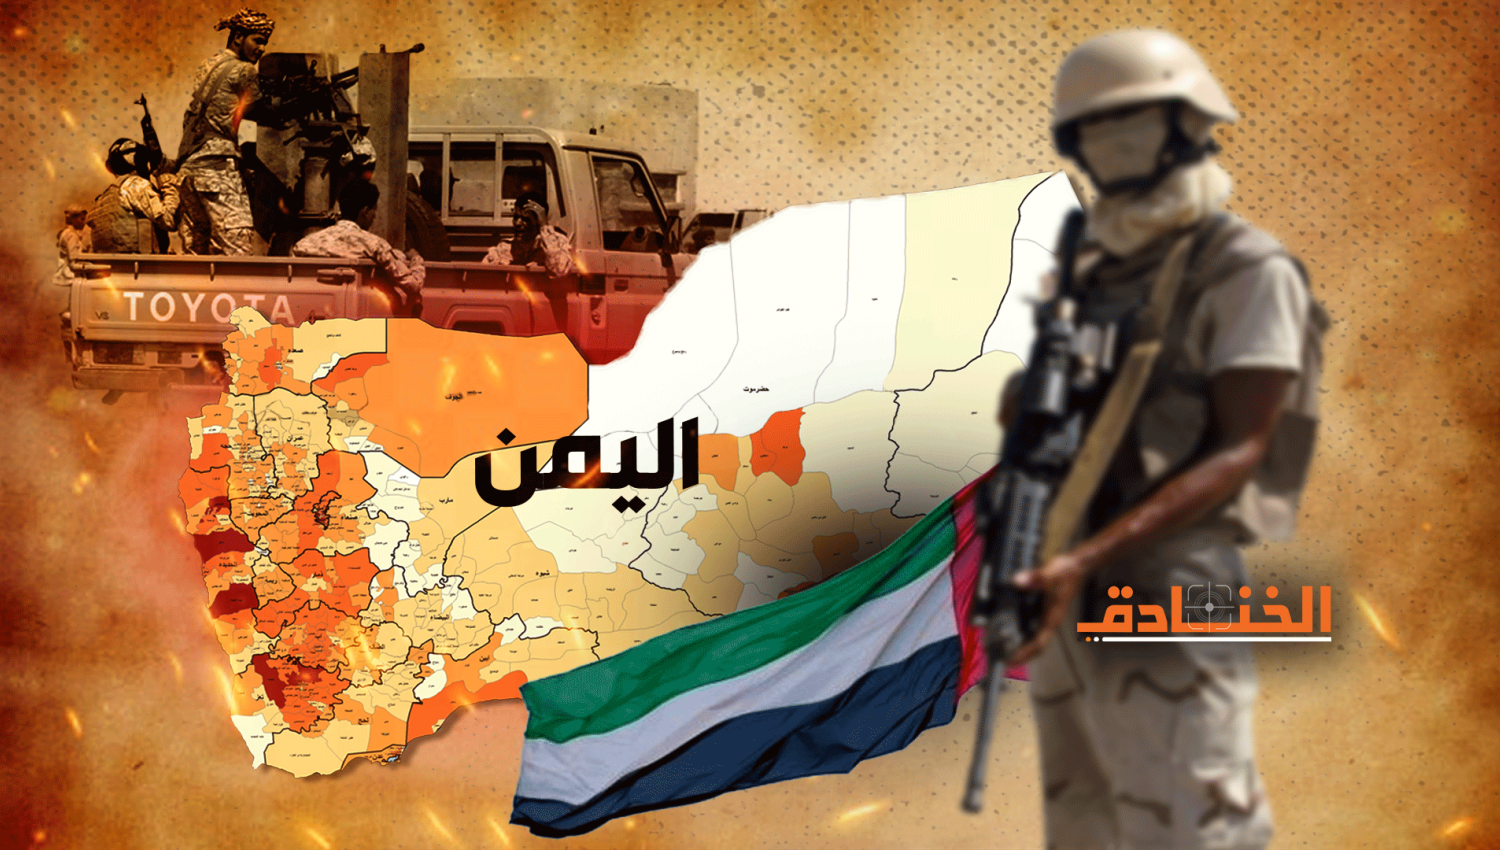 الميليشيات الاماراتية في اليمن و"استراتيجية الطاعة"! 